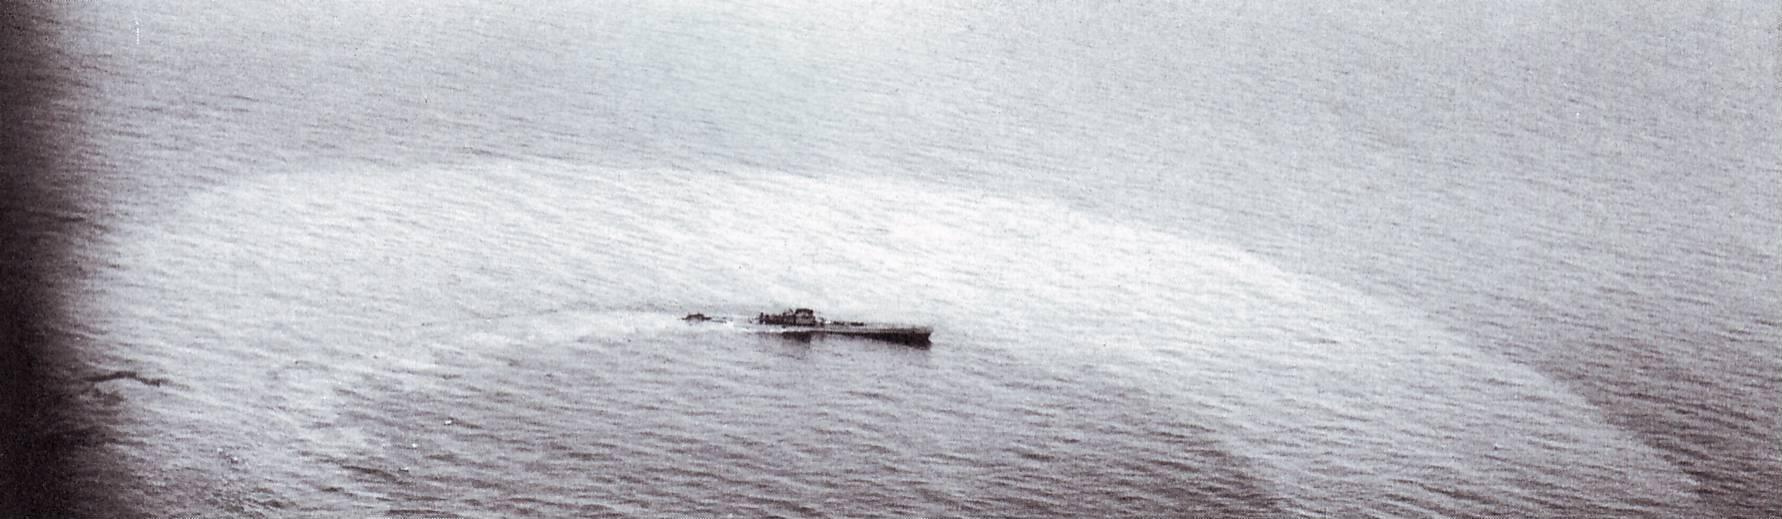 U-459